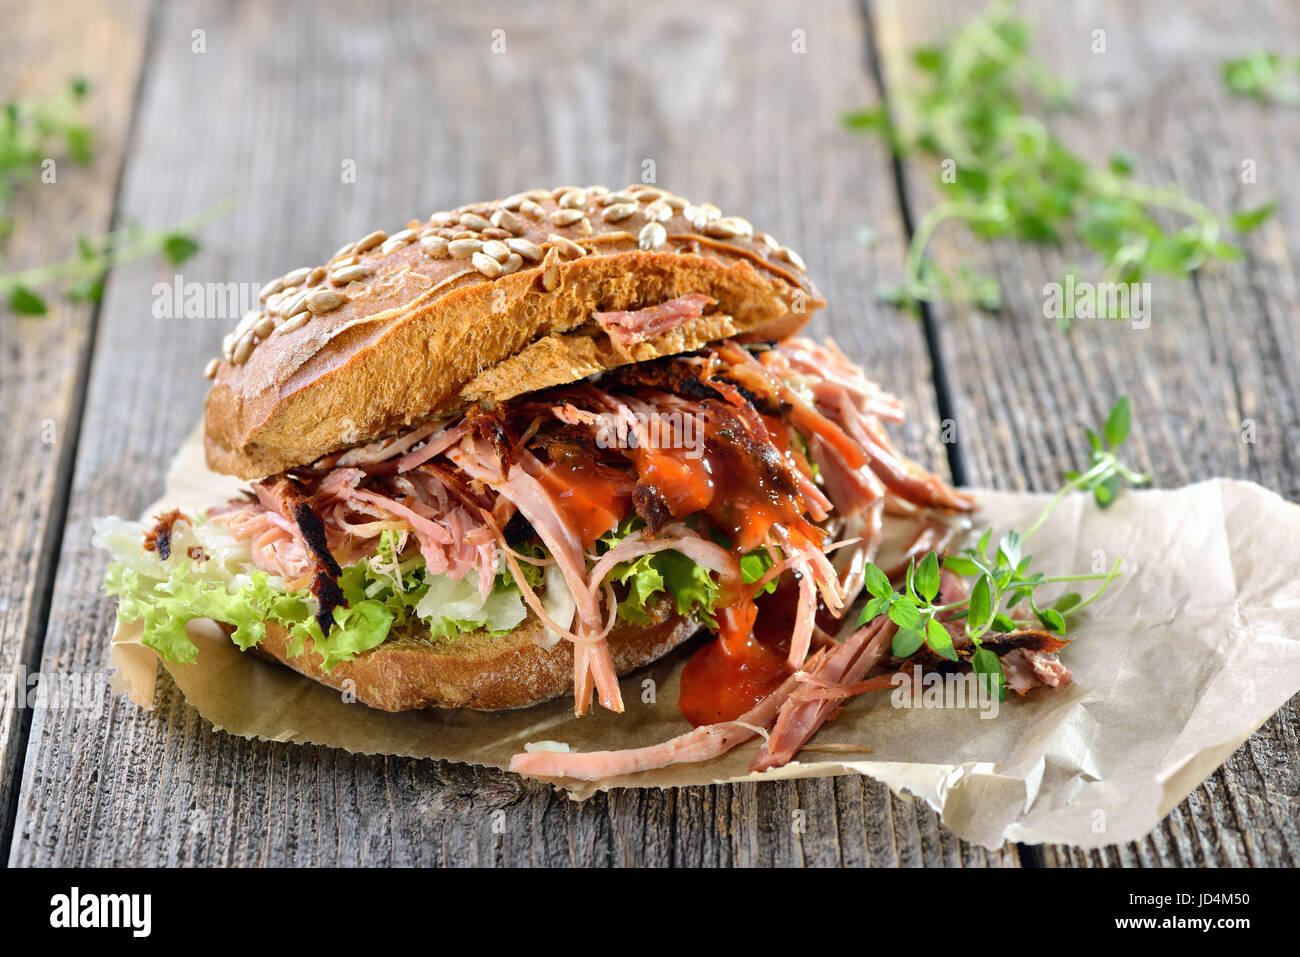 Cucina di strada: barbecue di carne di maiale tirato sandwich integrale con coleslaw, hot BBQ SAUCE servita su carta da imballaggio marrone su un sfondo di legno Foto Stock